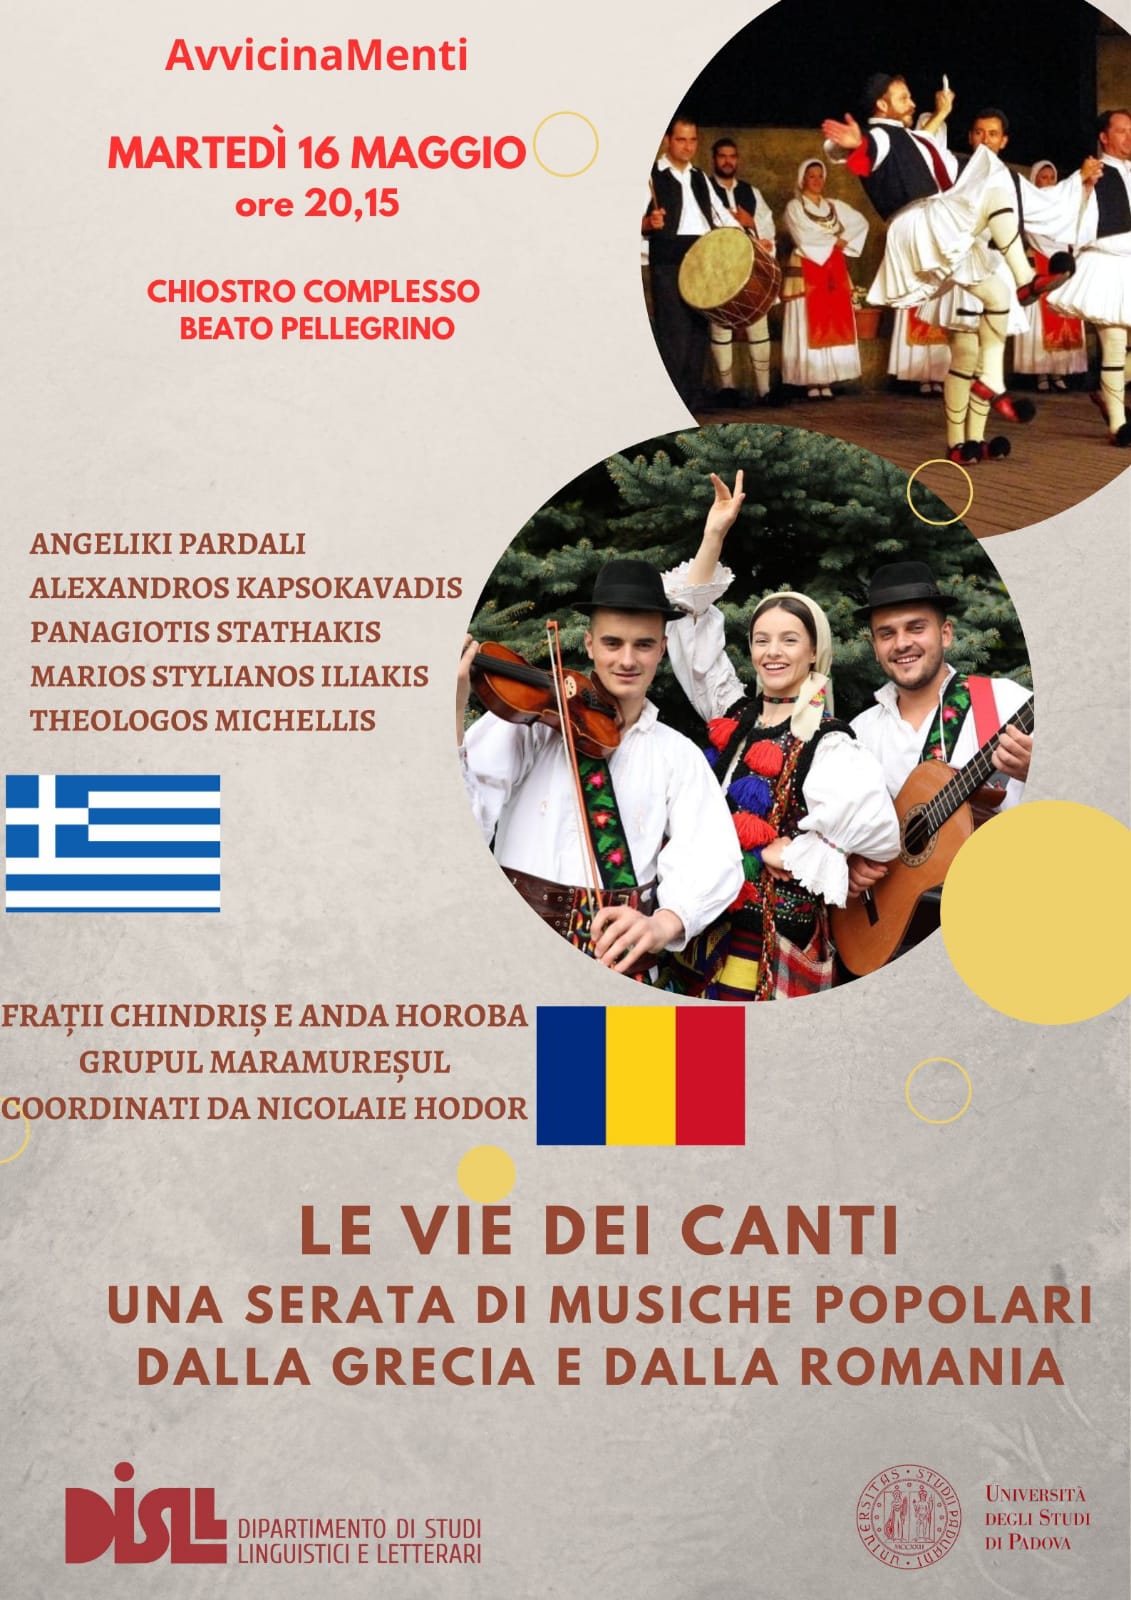 Attachment Locandina musica greca e romena.jpeg